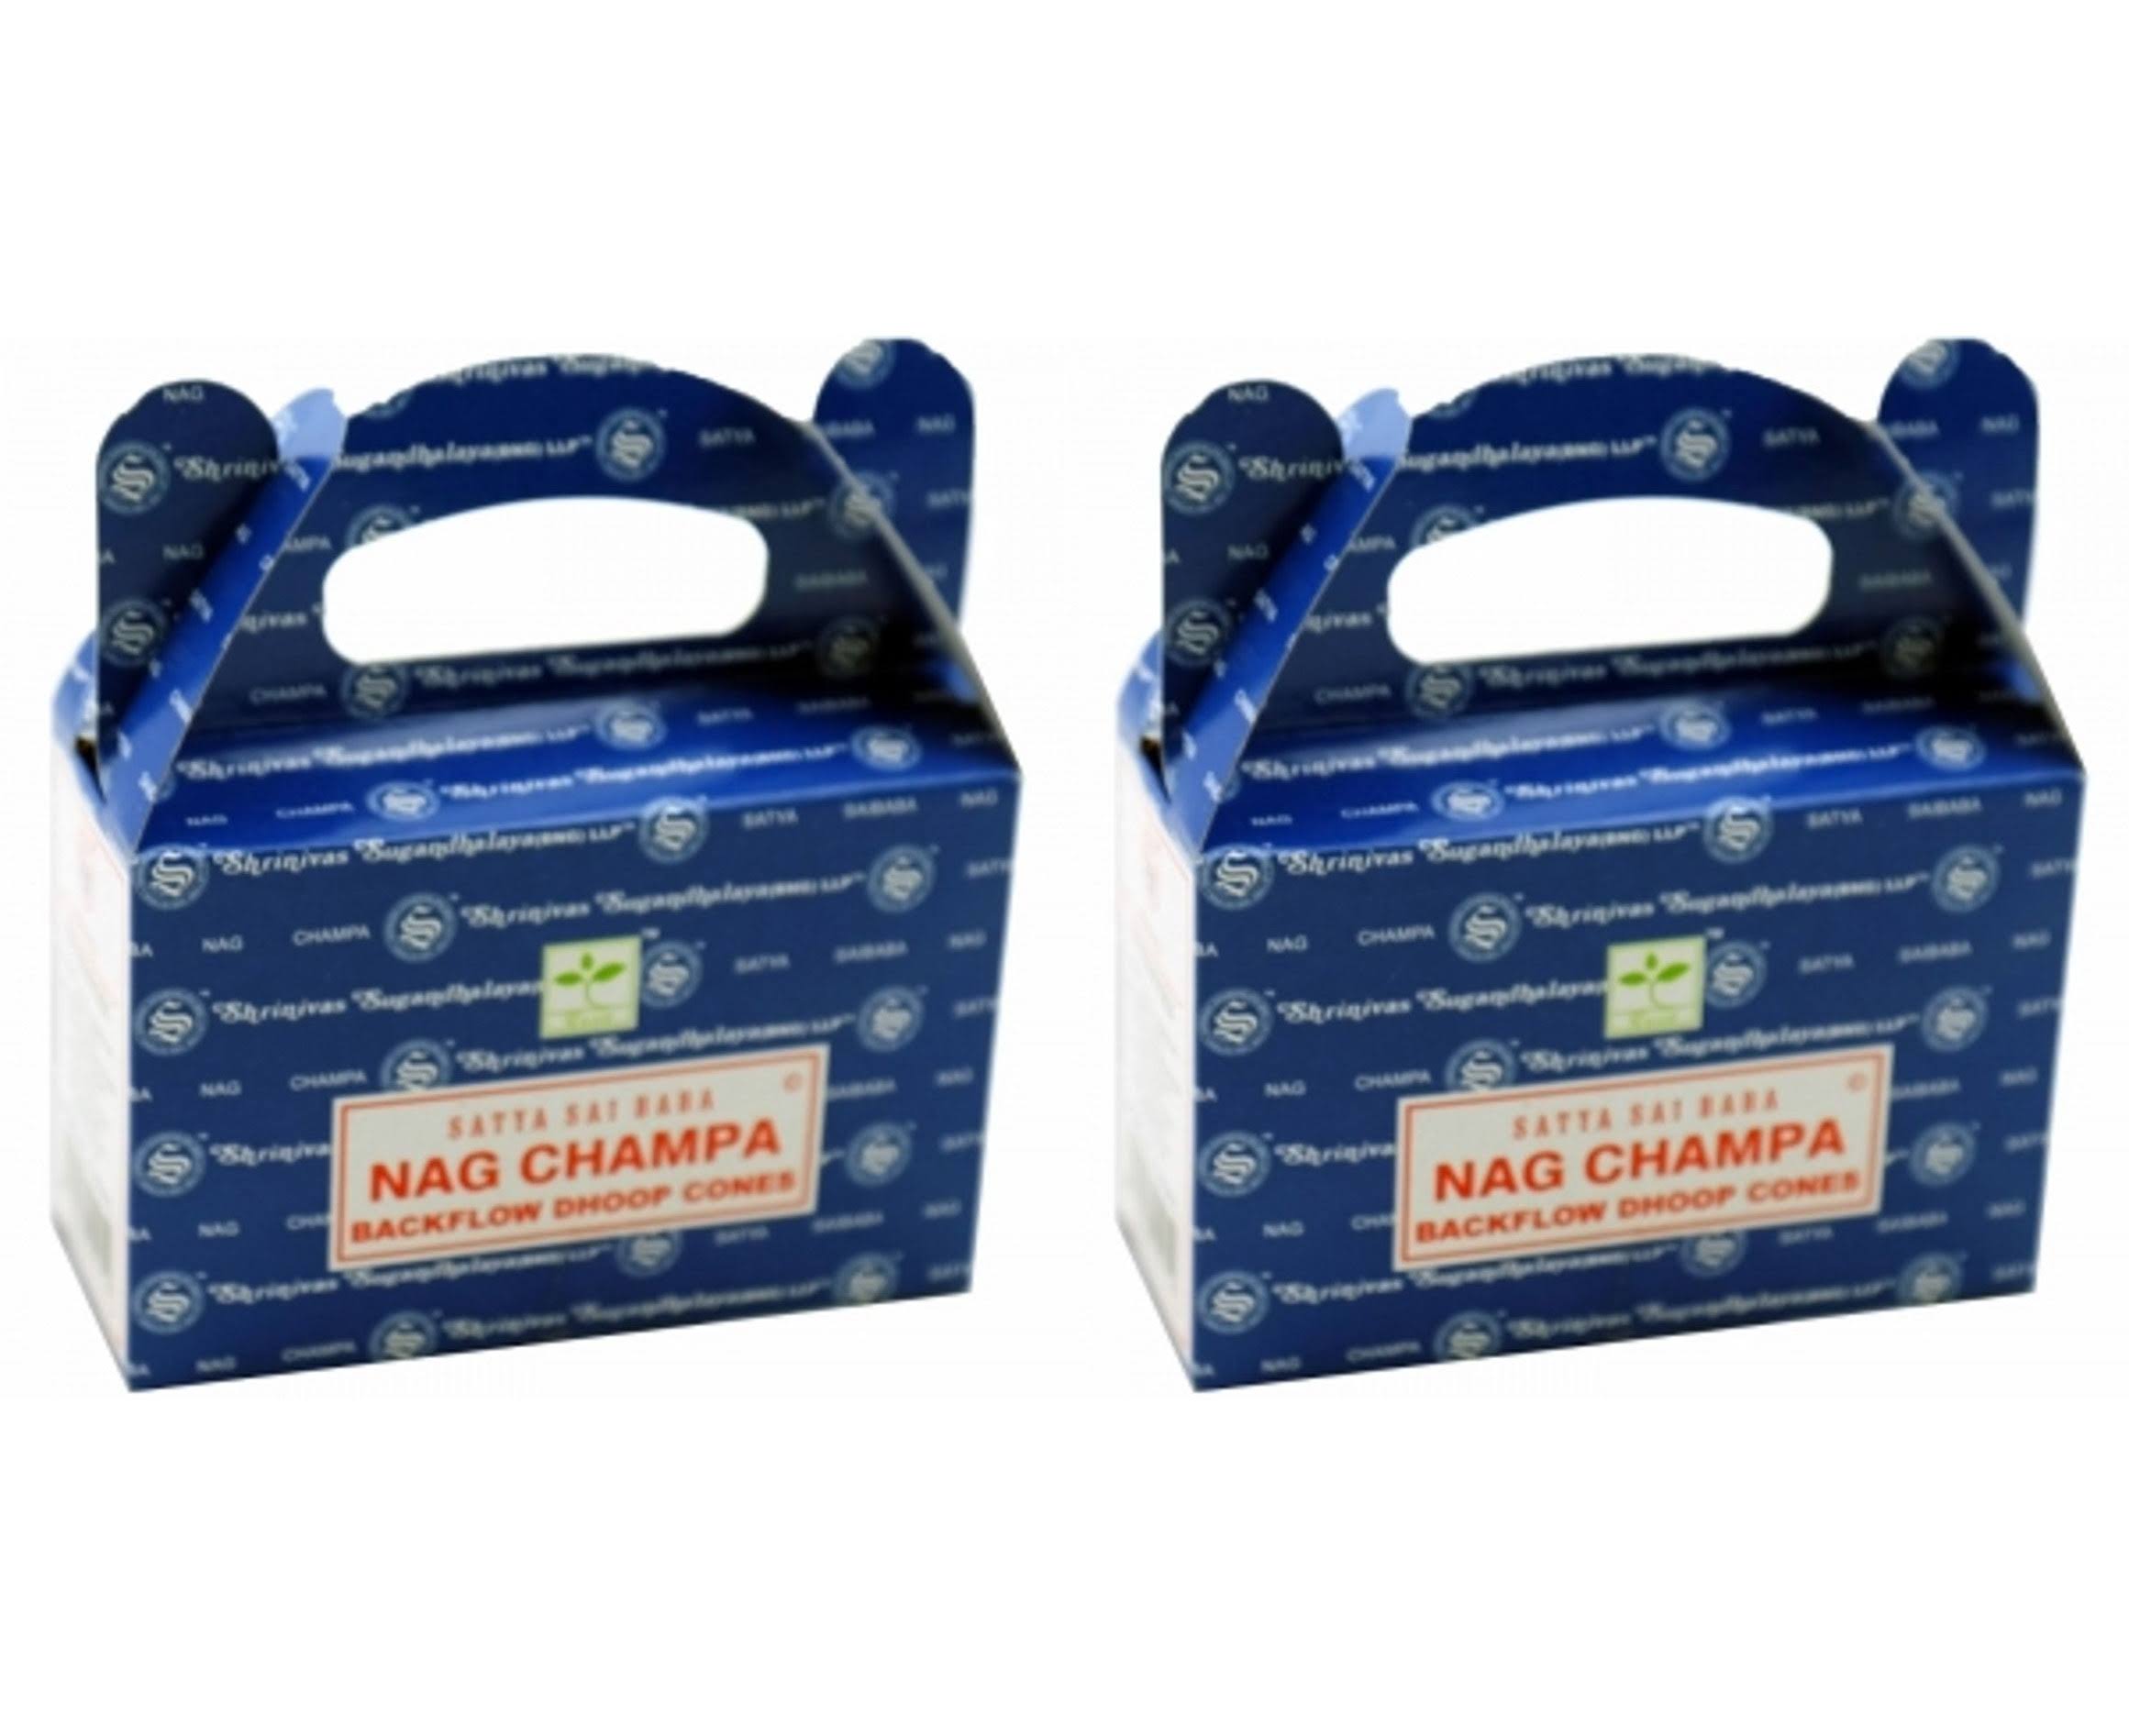 Satya Nag Champa Backflow Dhoop Cones - 6 Pack